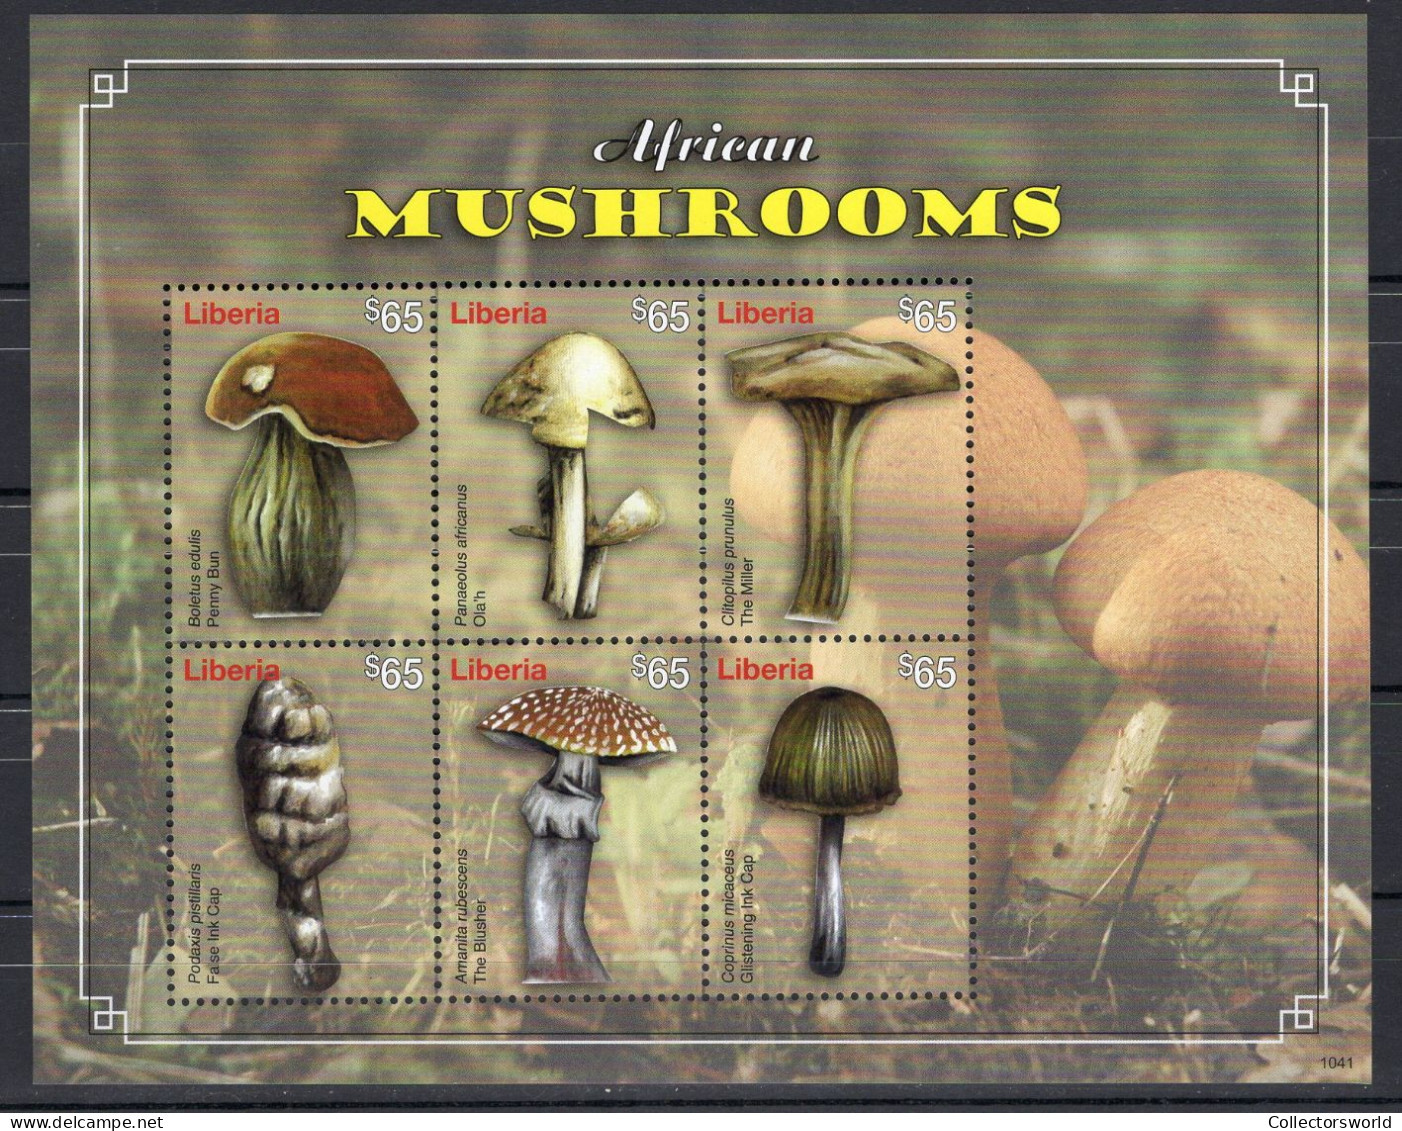 Liberia Block 6v 2011 African Mushrooms Mushroom Fungi Amanita Boletus MNH - Liberia